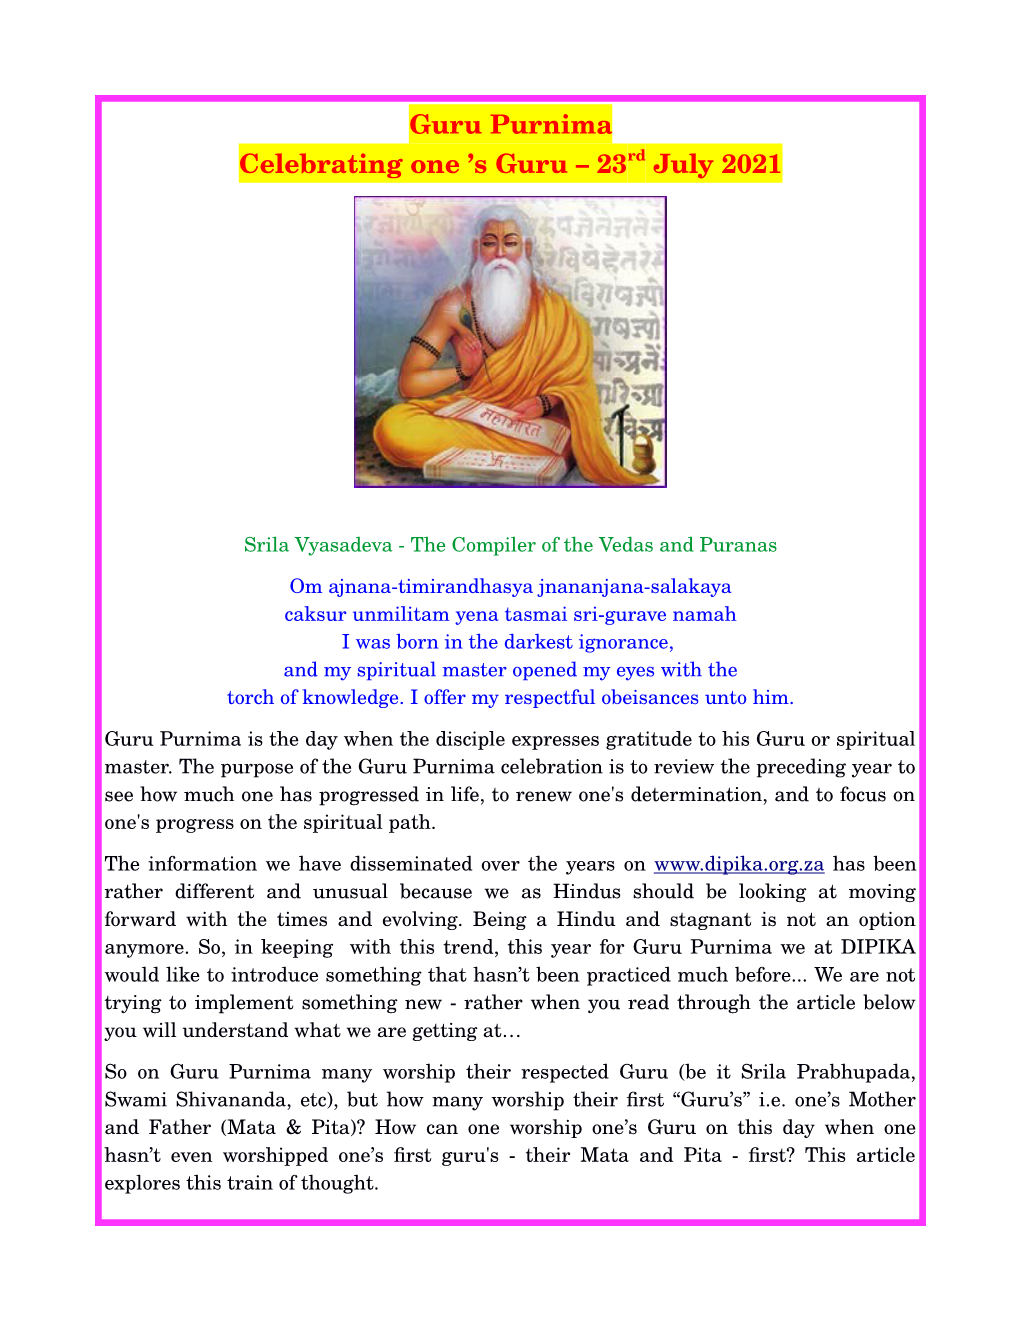 Guru-Purnima-23Rd-July-2021